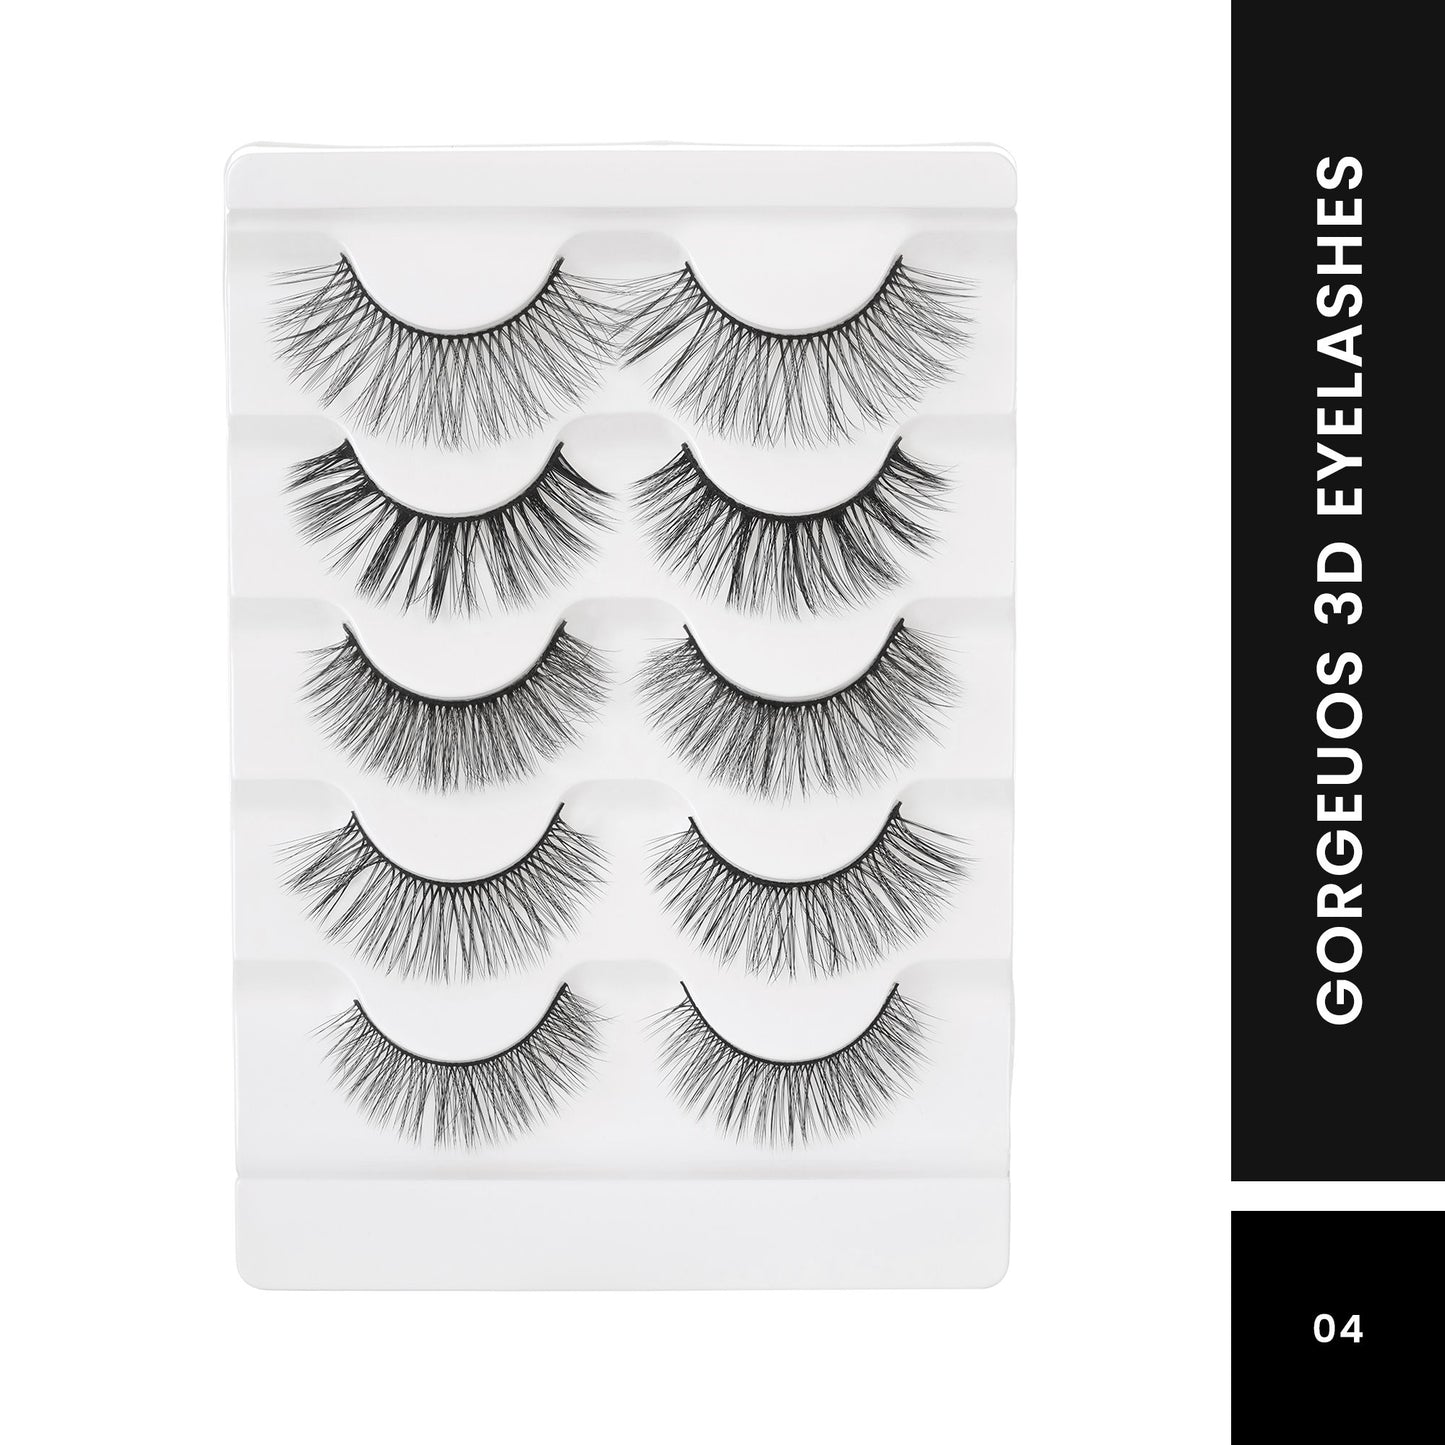 Swiss Beauty 3D Eyelashes Gorgeous - Lashes 04 Set of 05 (5N)